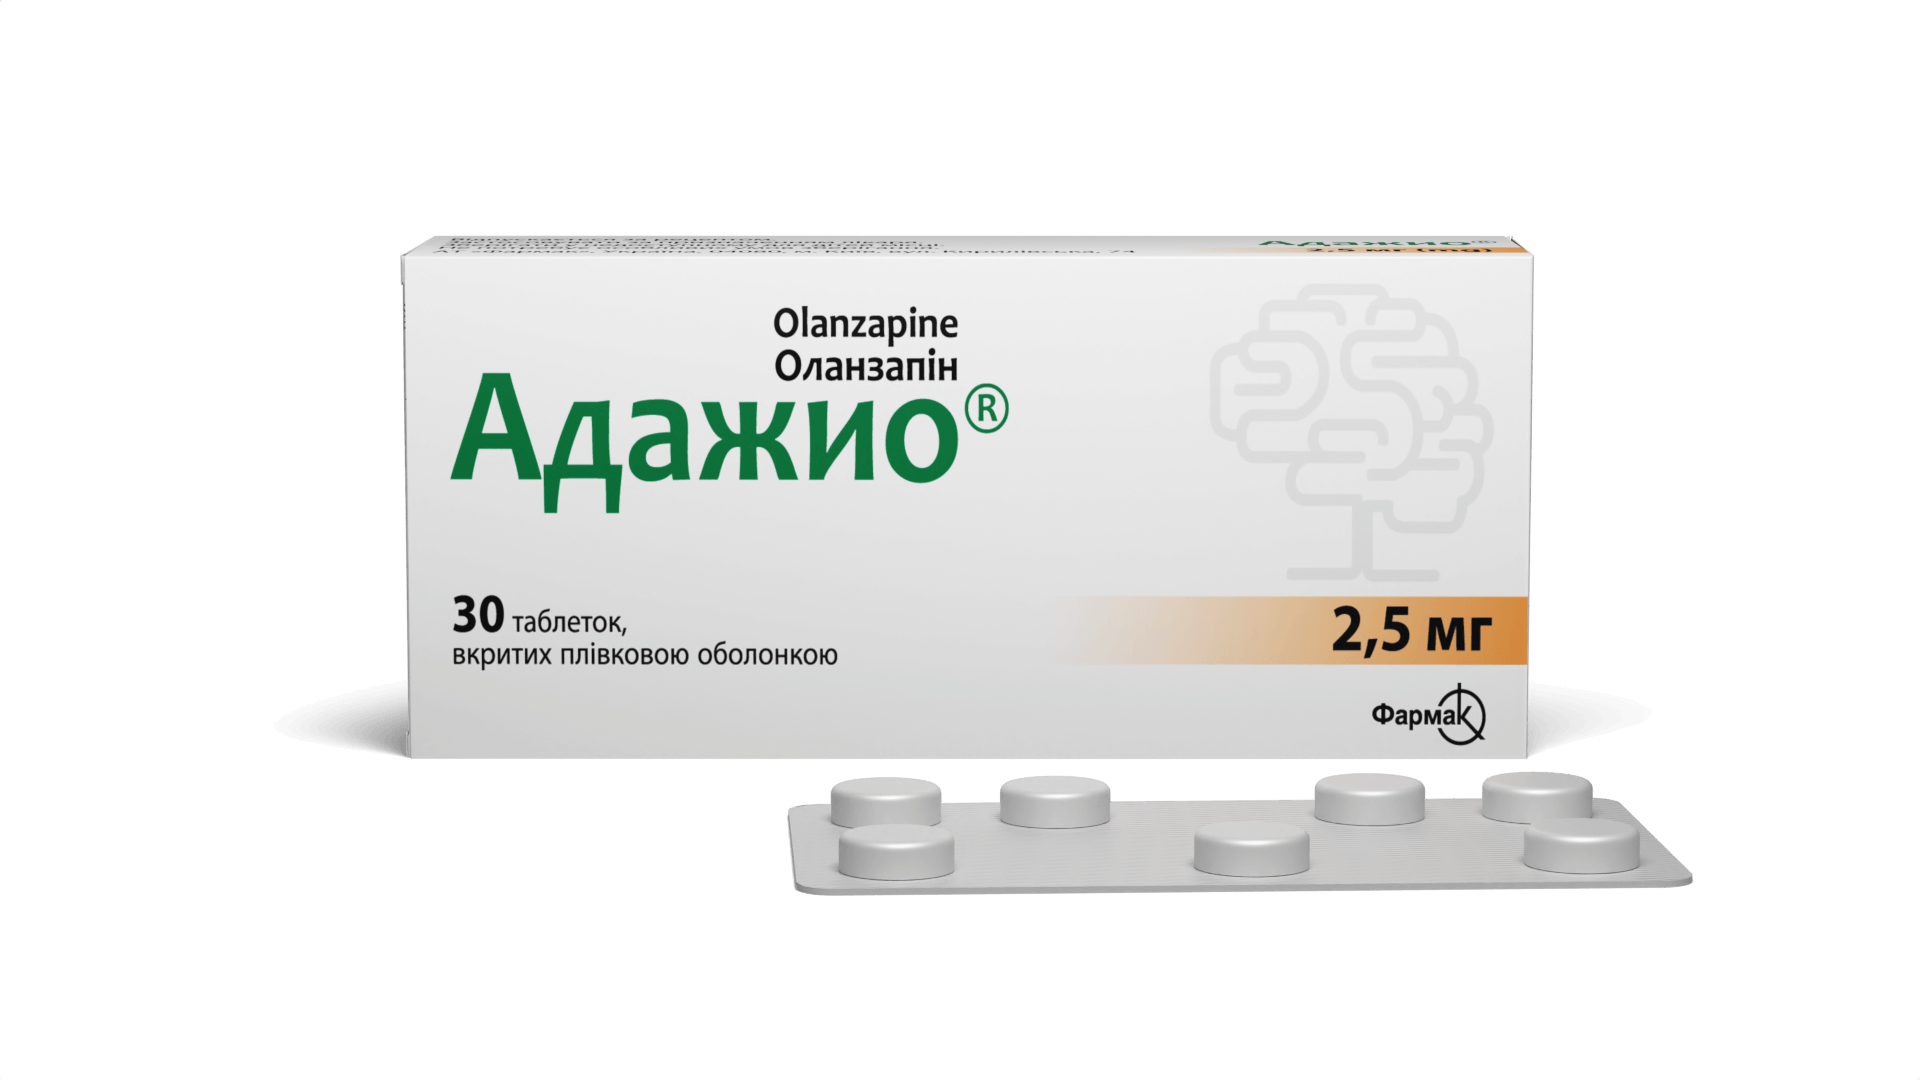 Адажио® 2,5 мг (2)